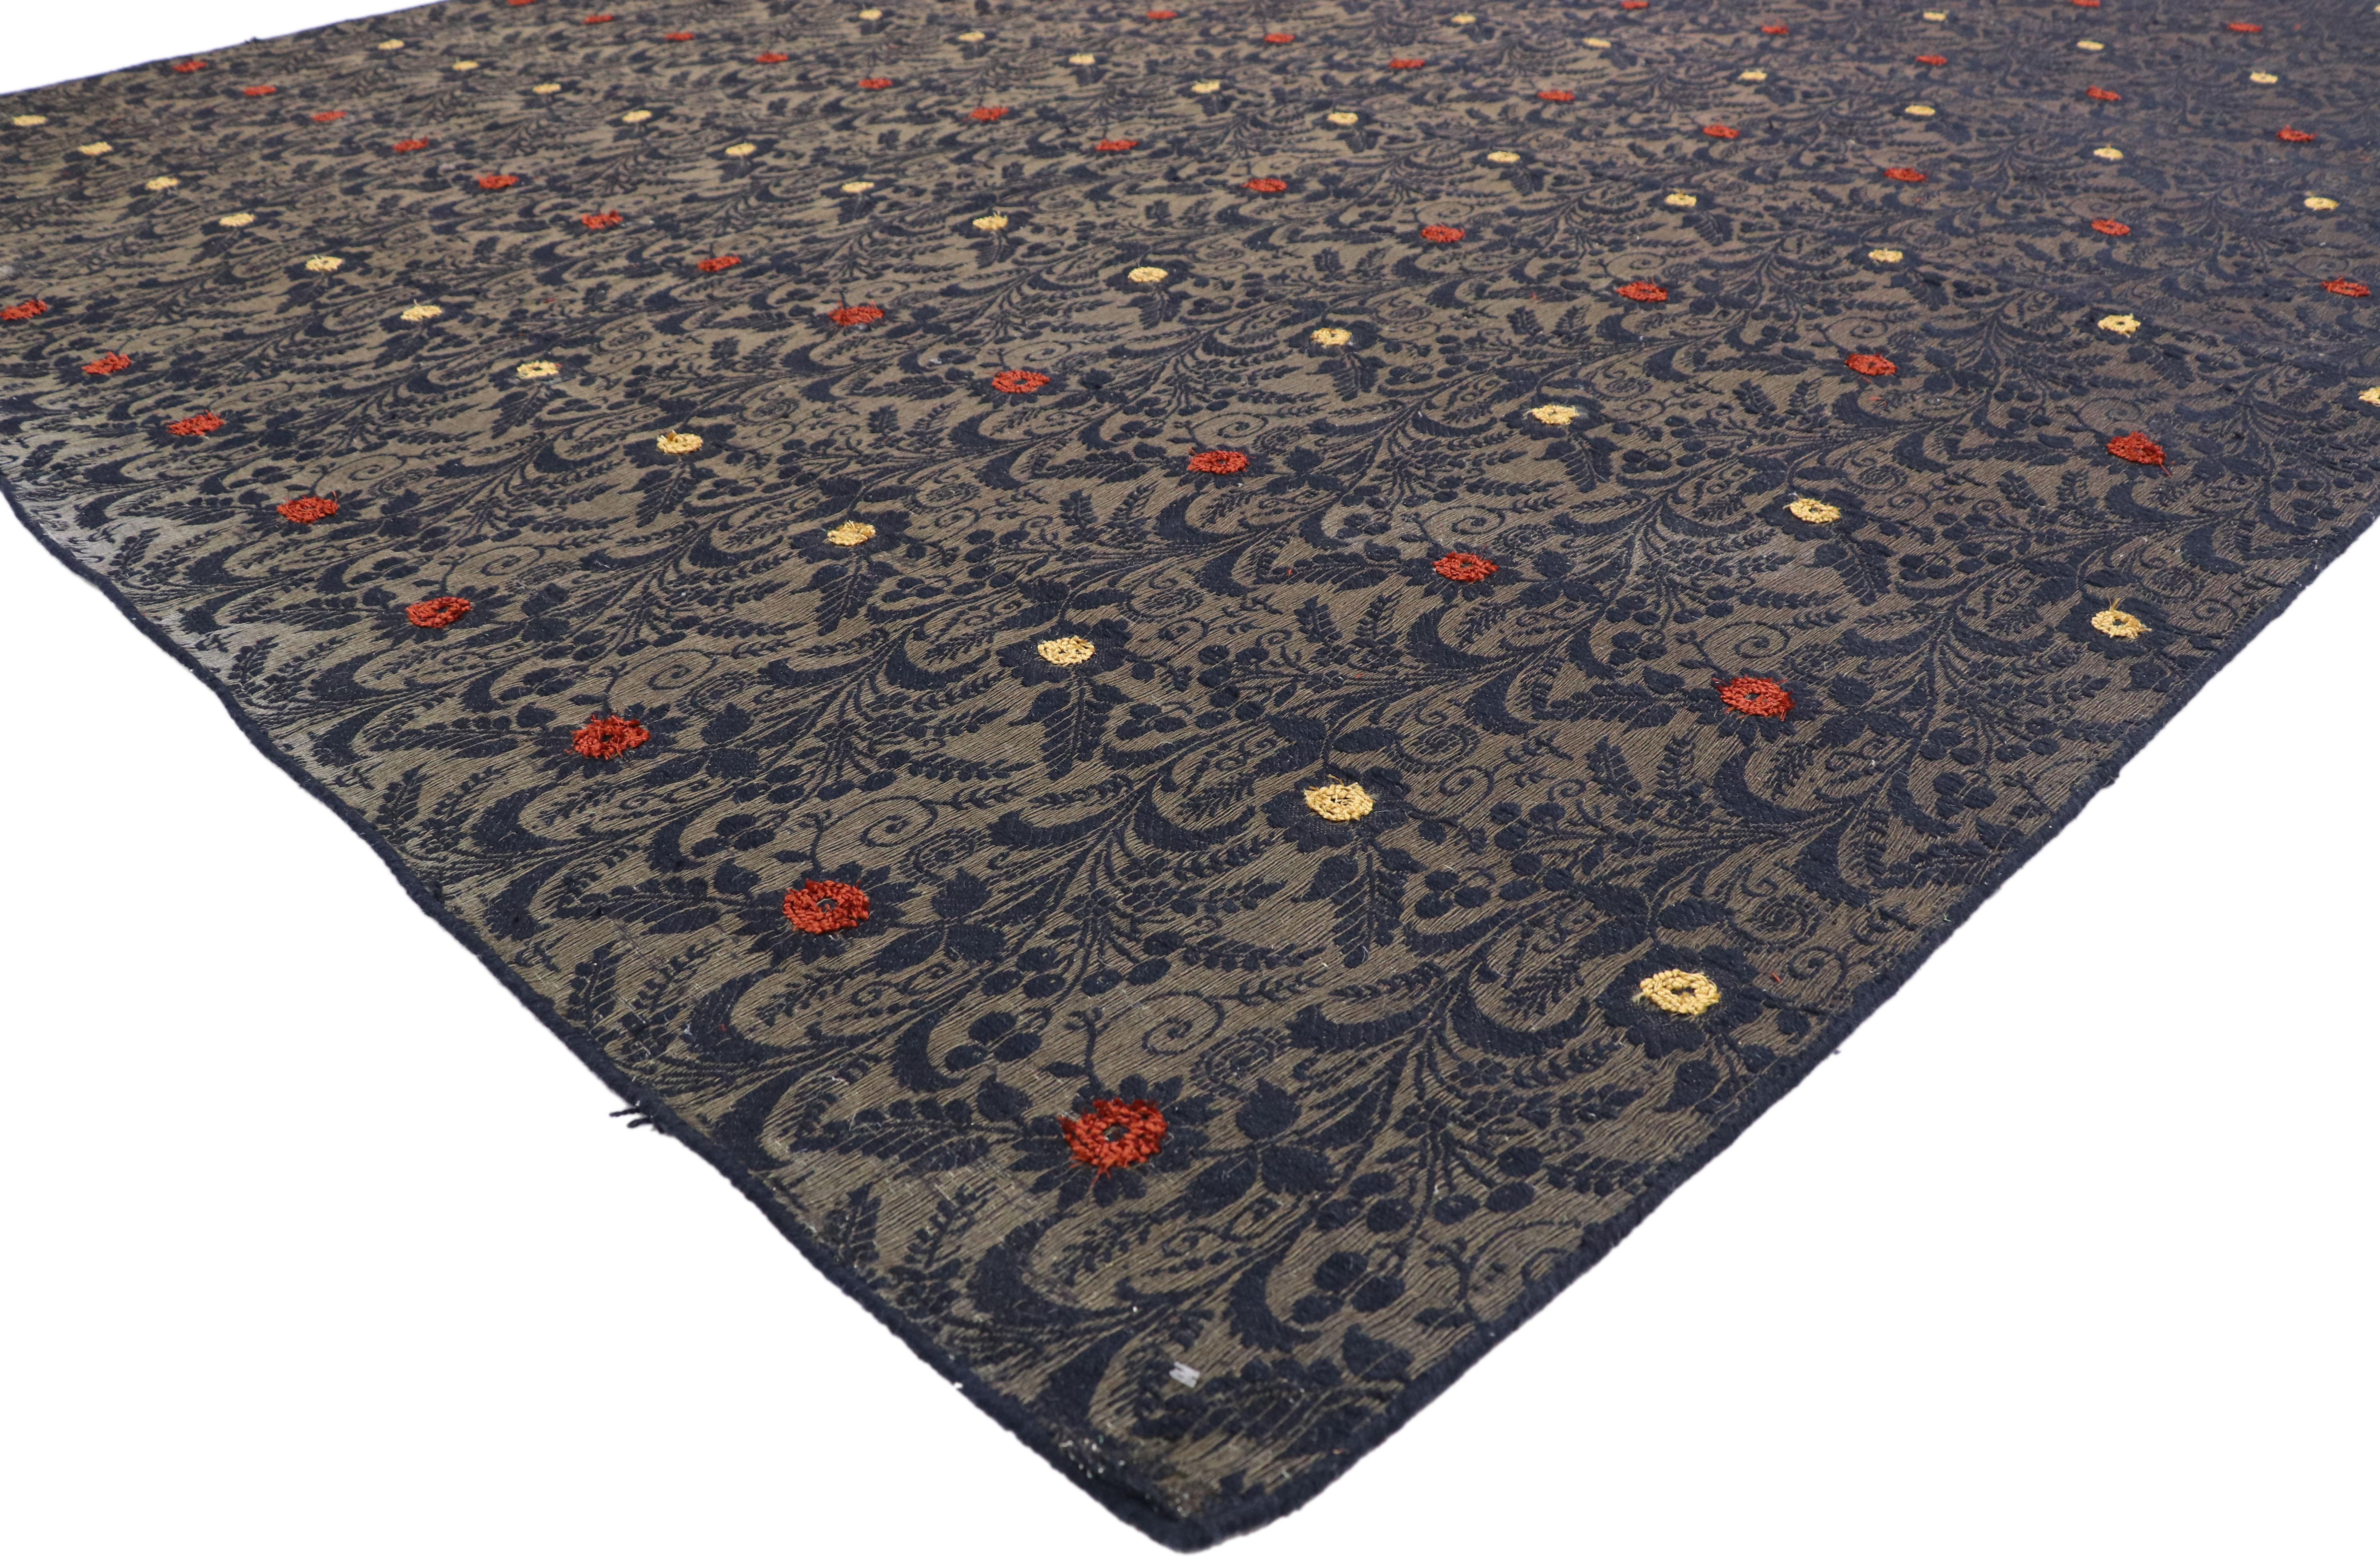 77335 Vintage bestickter Seidenteppich im viktorianisch-gotischen Stil. Dieser handgewebte, mit Wolle und Seide bestickte Teppich zeichnet sich durch ein sich wiederholendes Blumenmuster aus. Mit seinen kleinen Blüten, Fruchtbeeren und bunten,